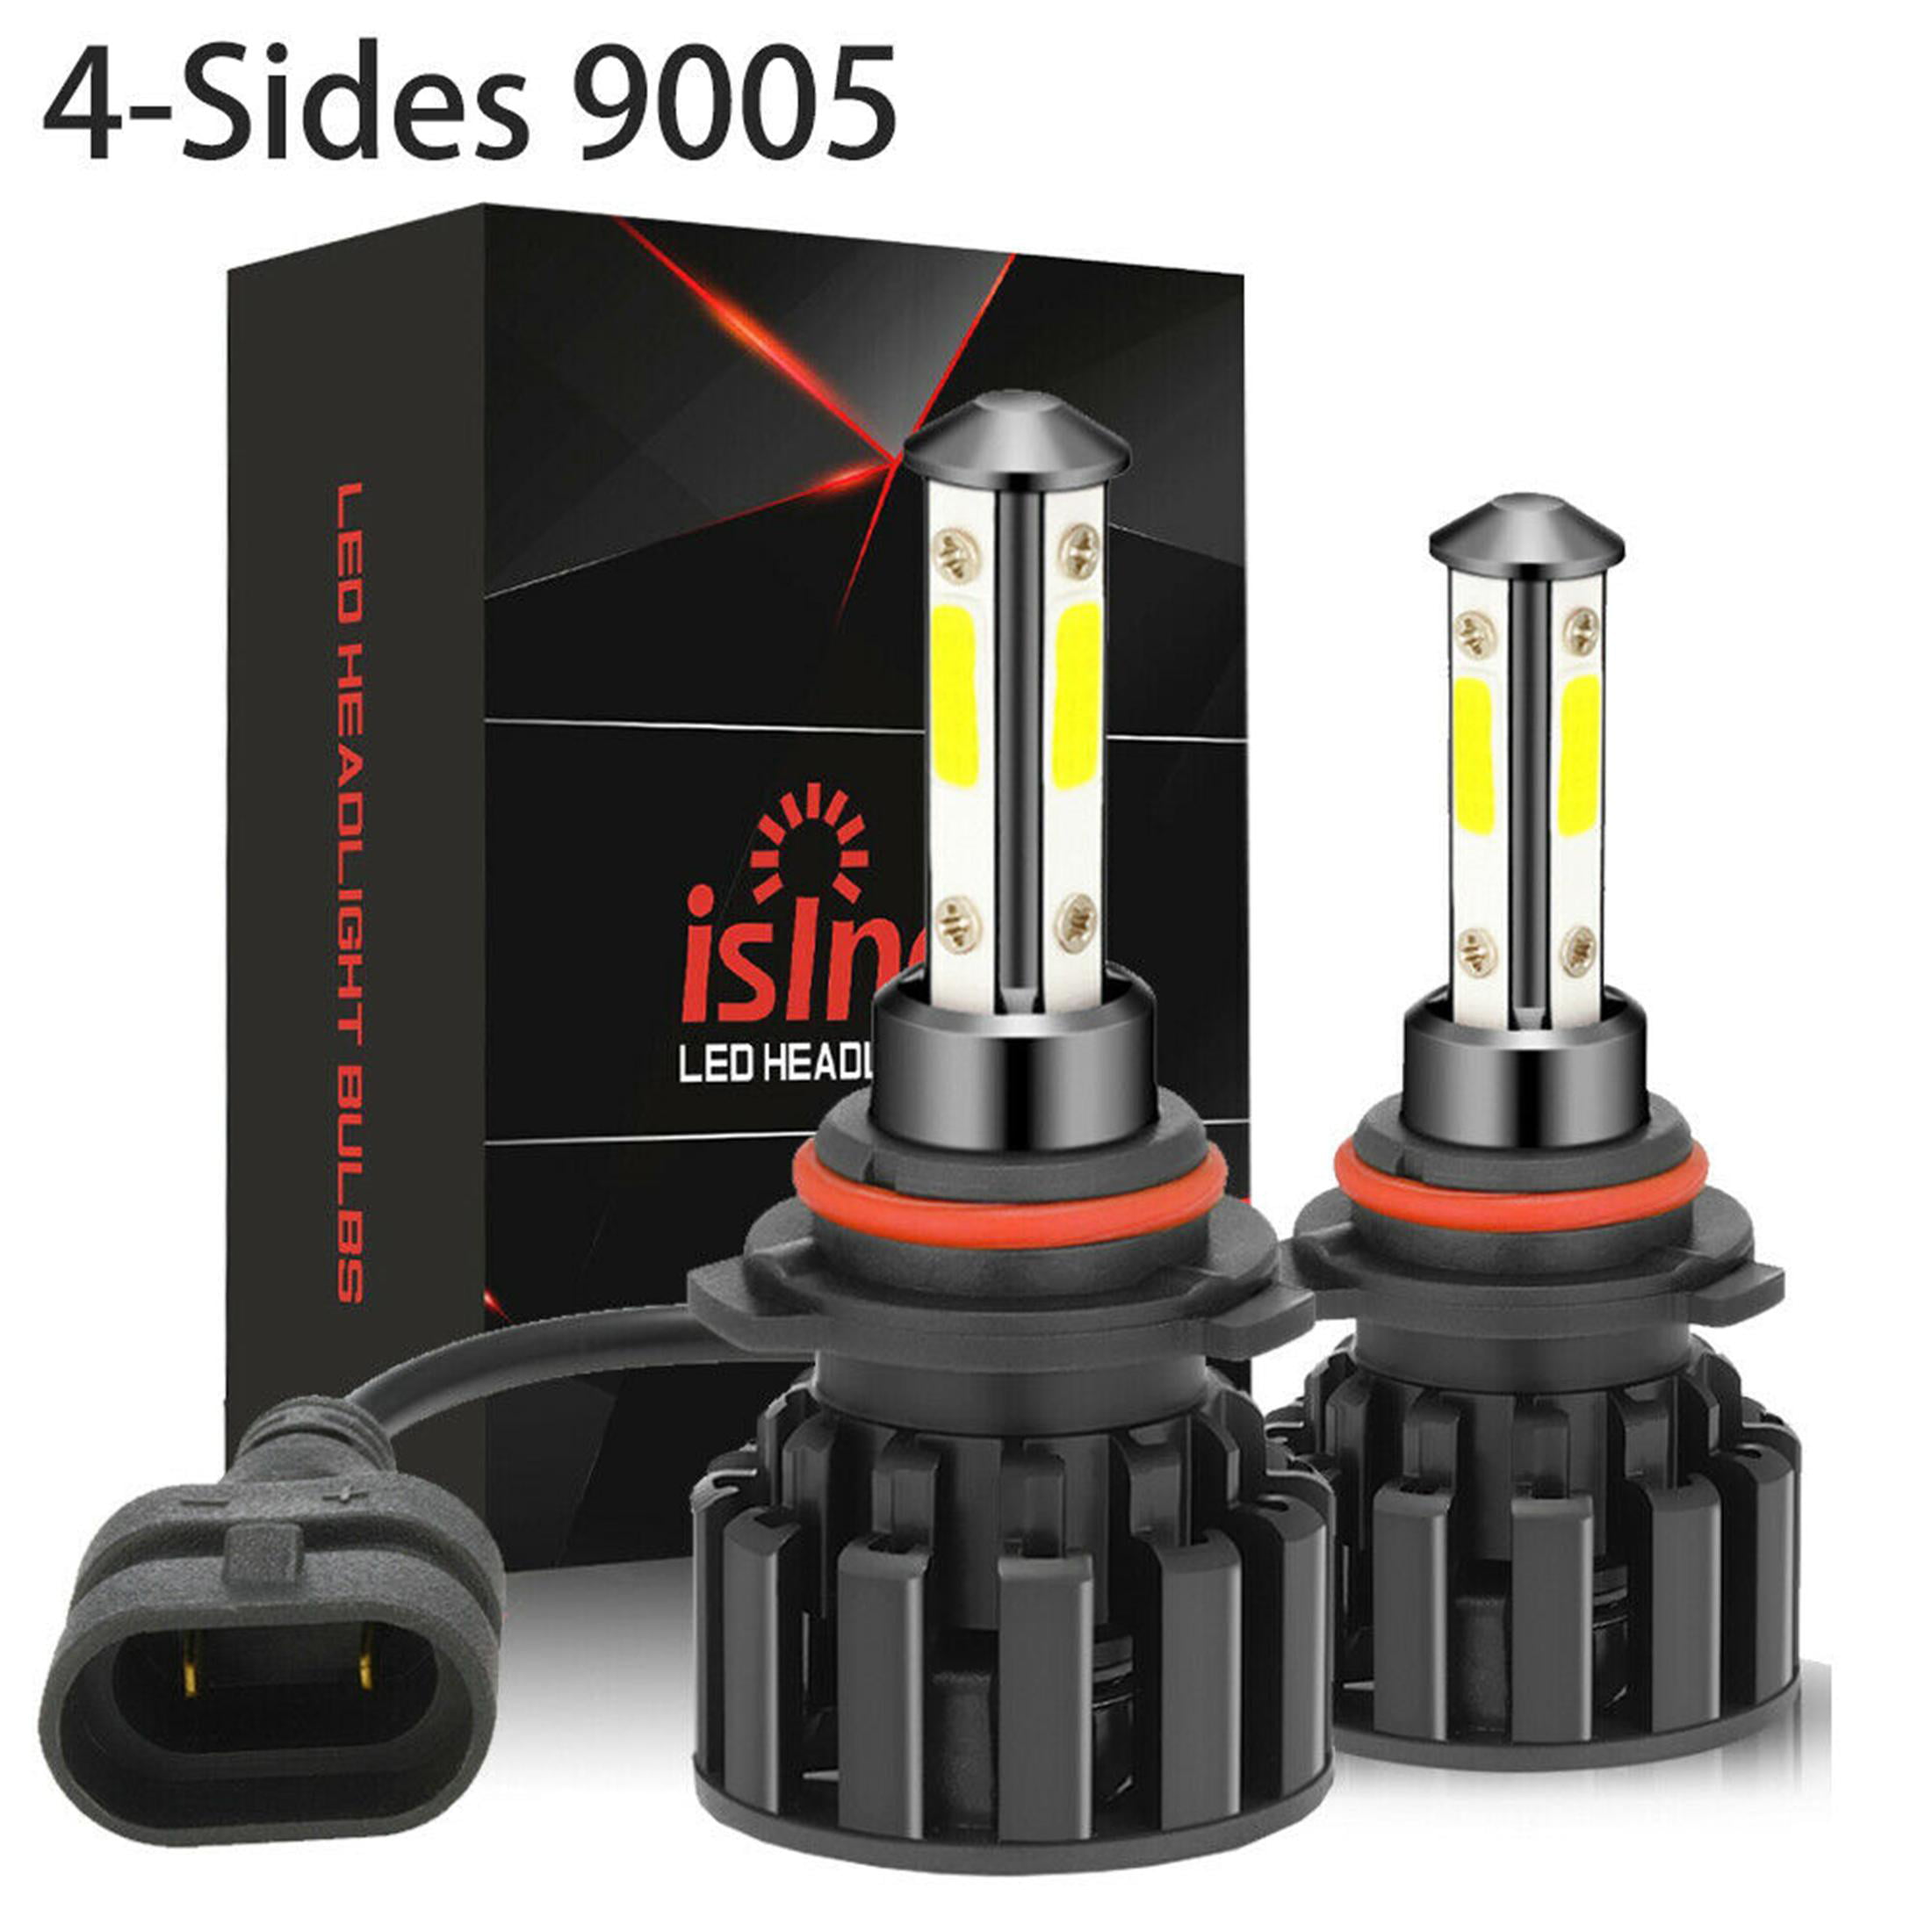 4-Sides 9005 HB3 LED 6000K Xenon White High Beam Headlight Bulb Noiseless Design 